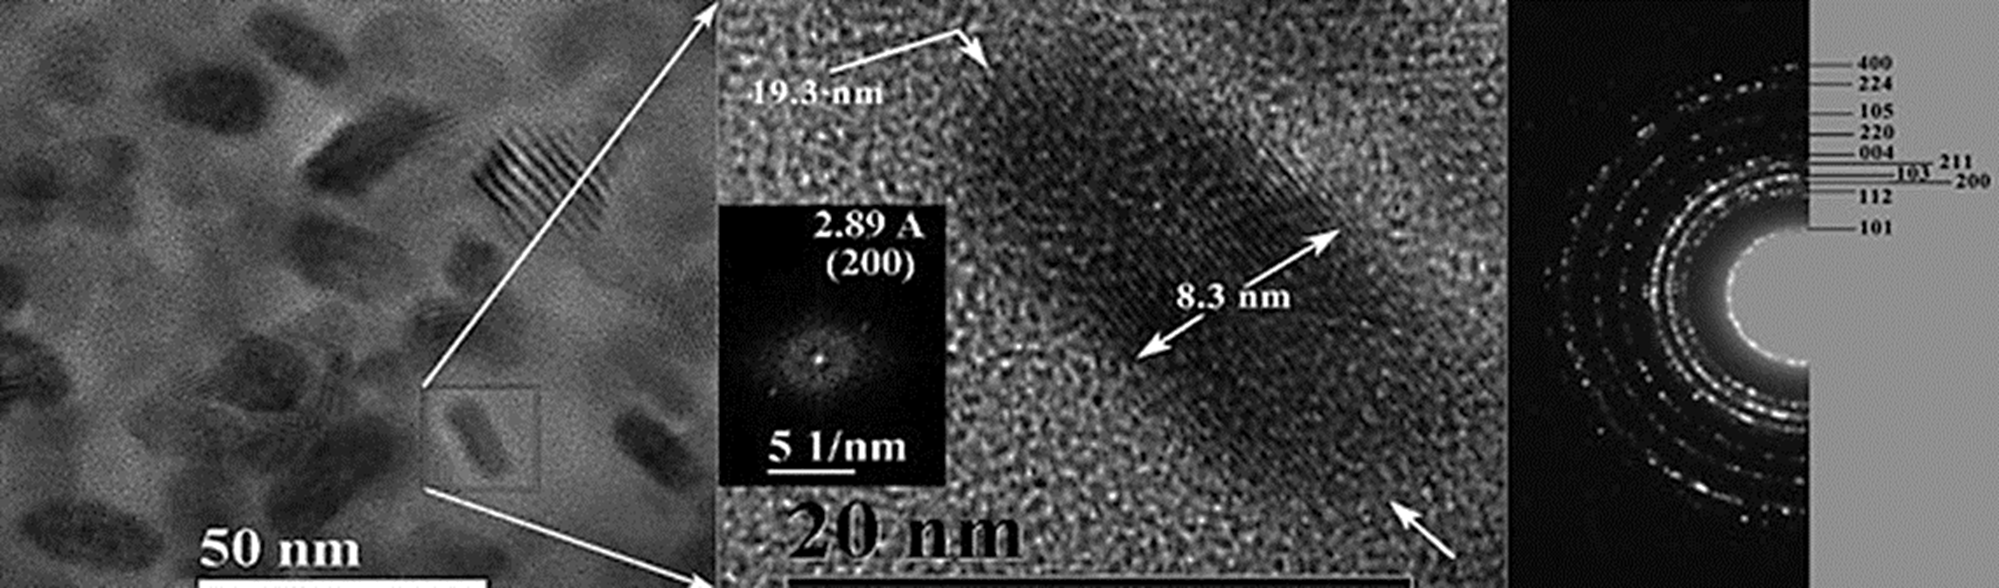 
						Micrografías obtenidas por TEM y HR-TEM de nanovaras de
								Mn3O4 obtenidas por el método coloidal. En el
							extremo derecho se presenta su correspondiente patrón de difracción de
							electrones.
					